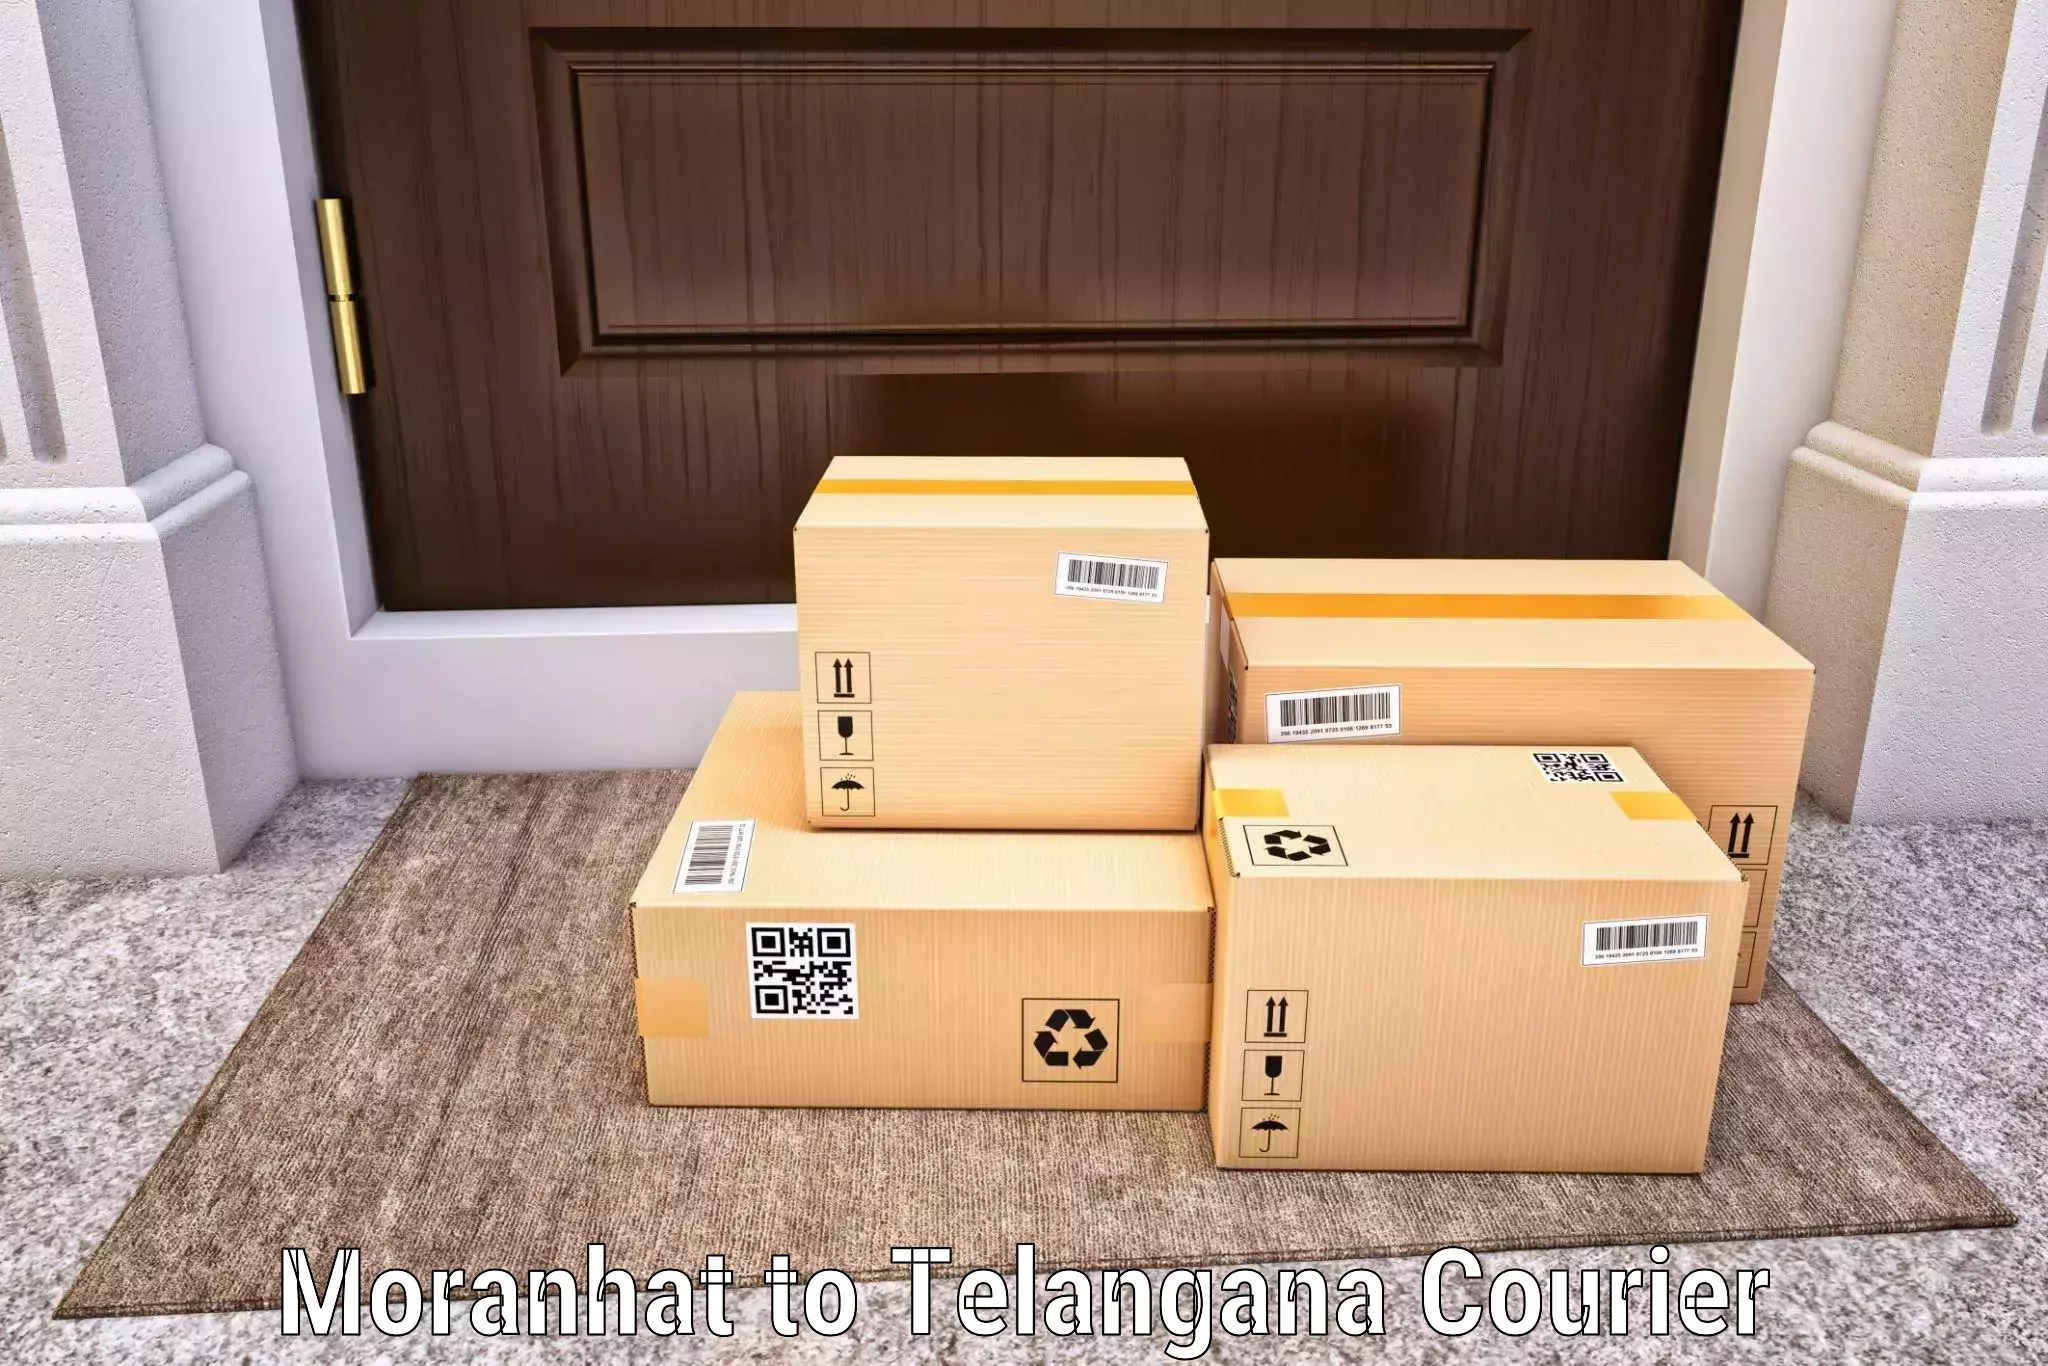 Express courier capabilities Moranhat to Mudigonda